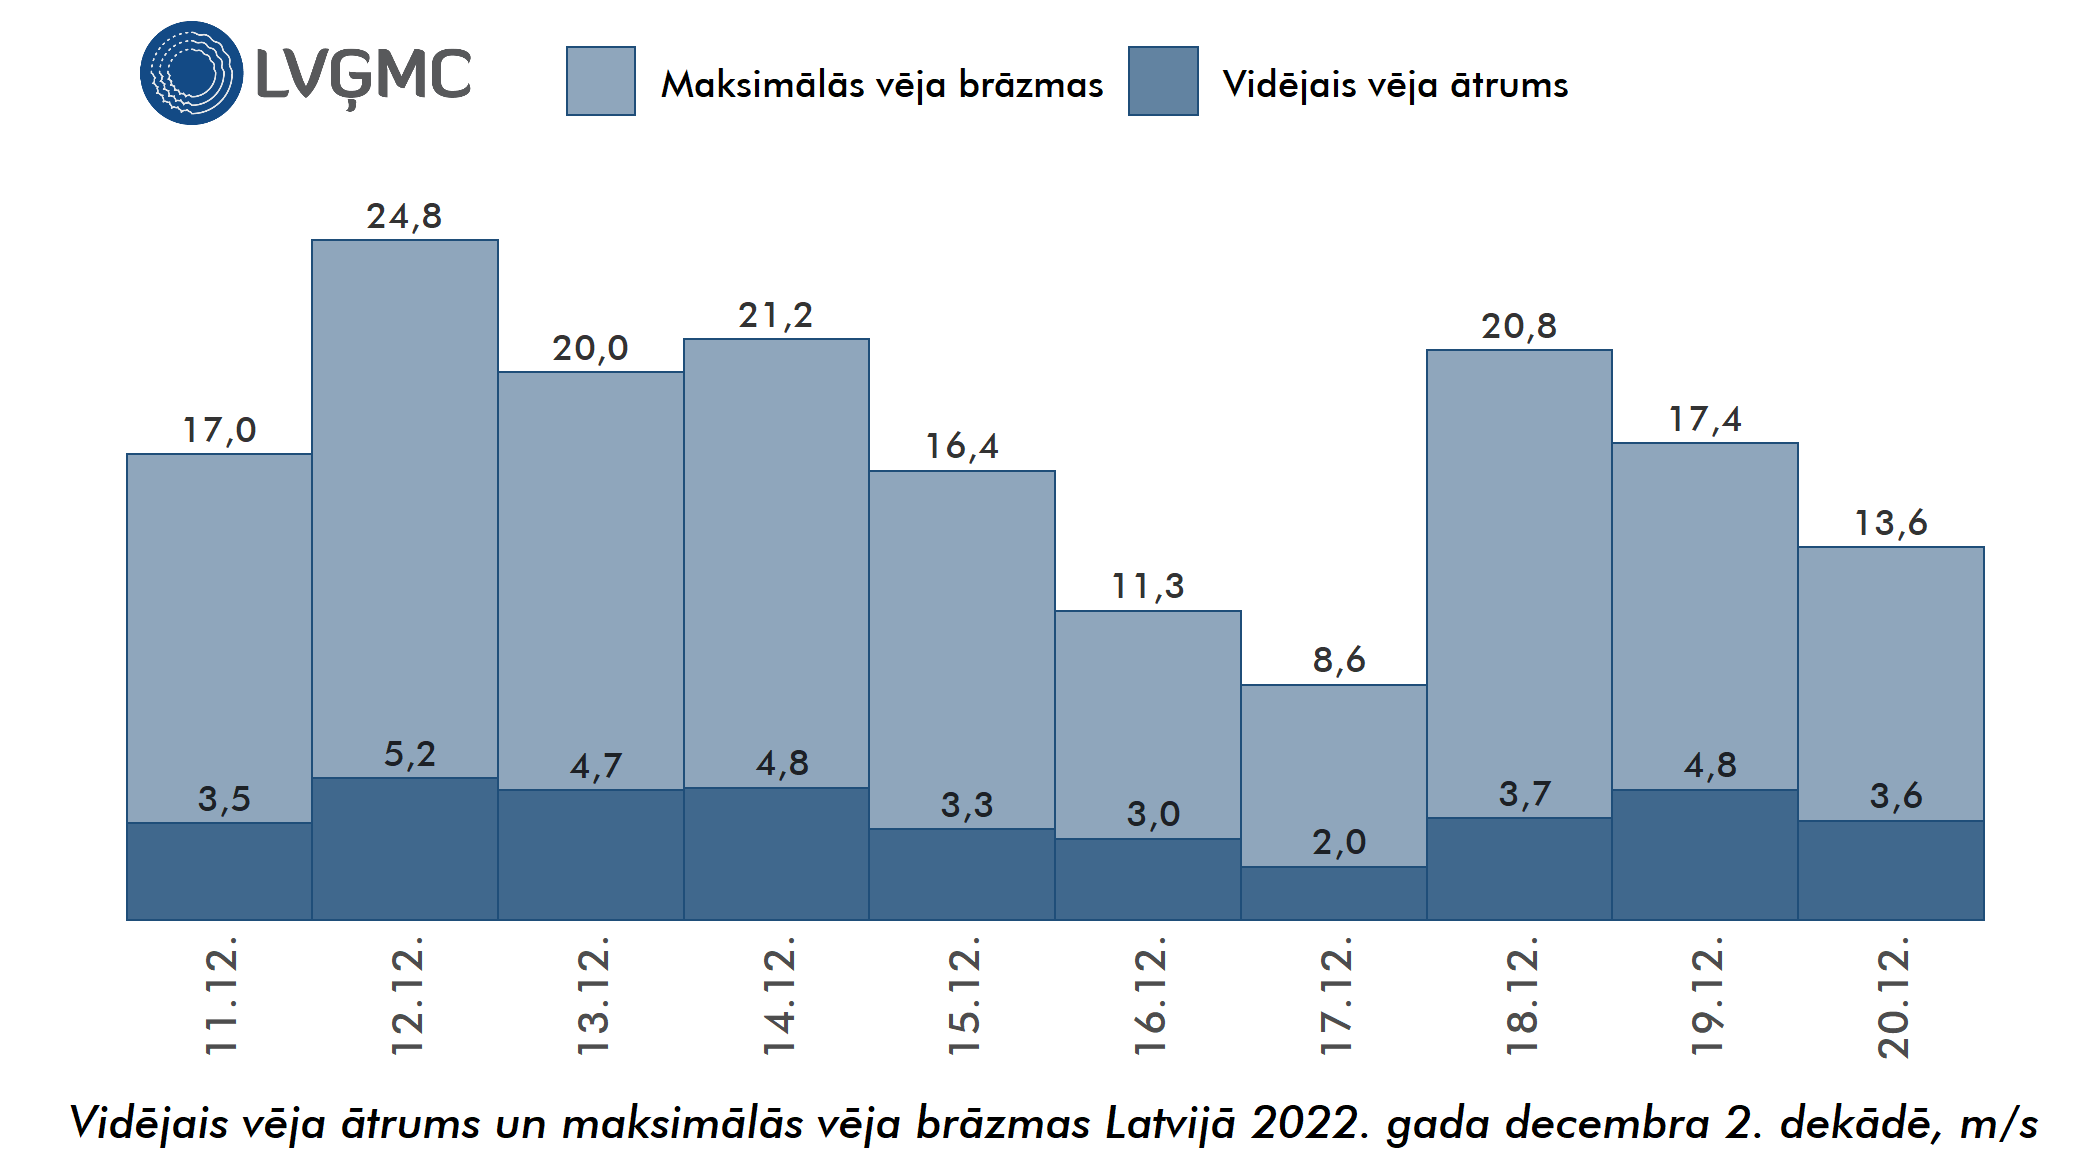 Vidējais un maksimālais vēja ātrums Lavijā 2022. gada decembra 2. dekādē, m/s